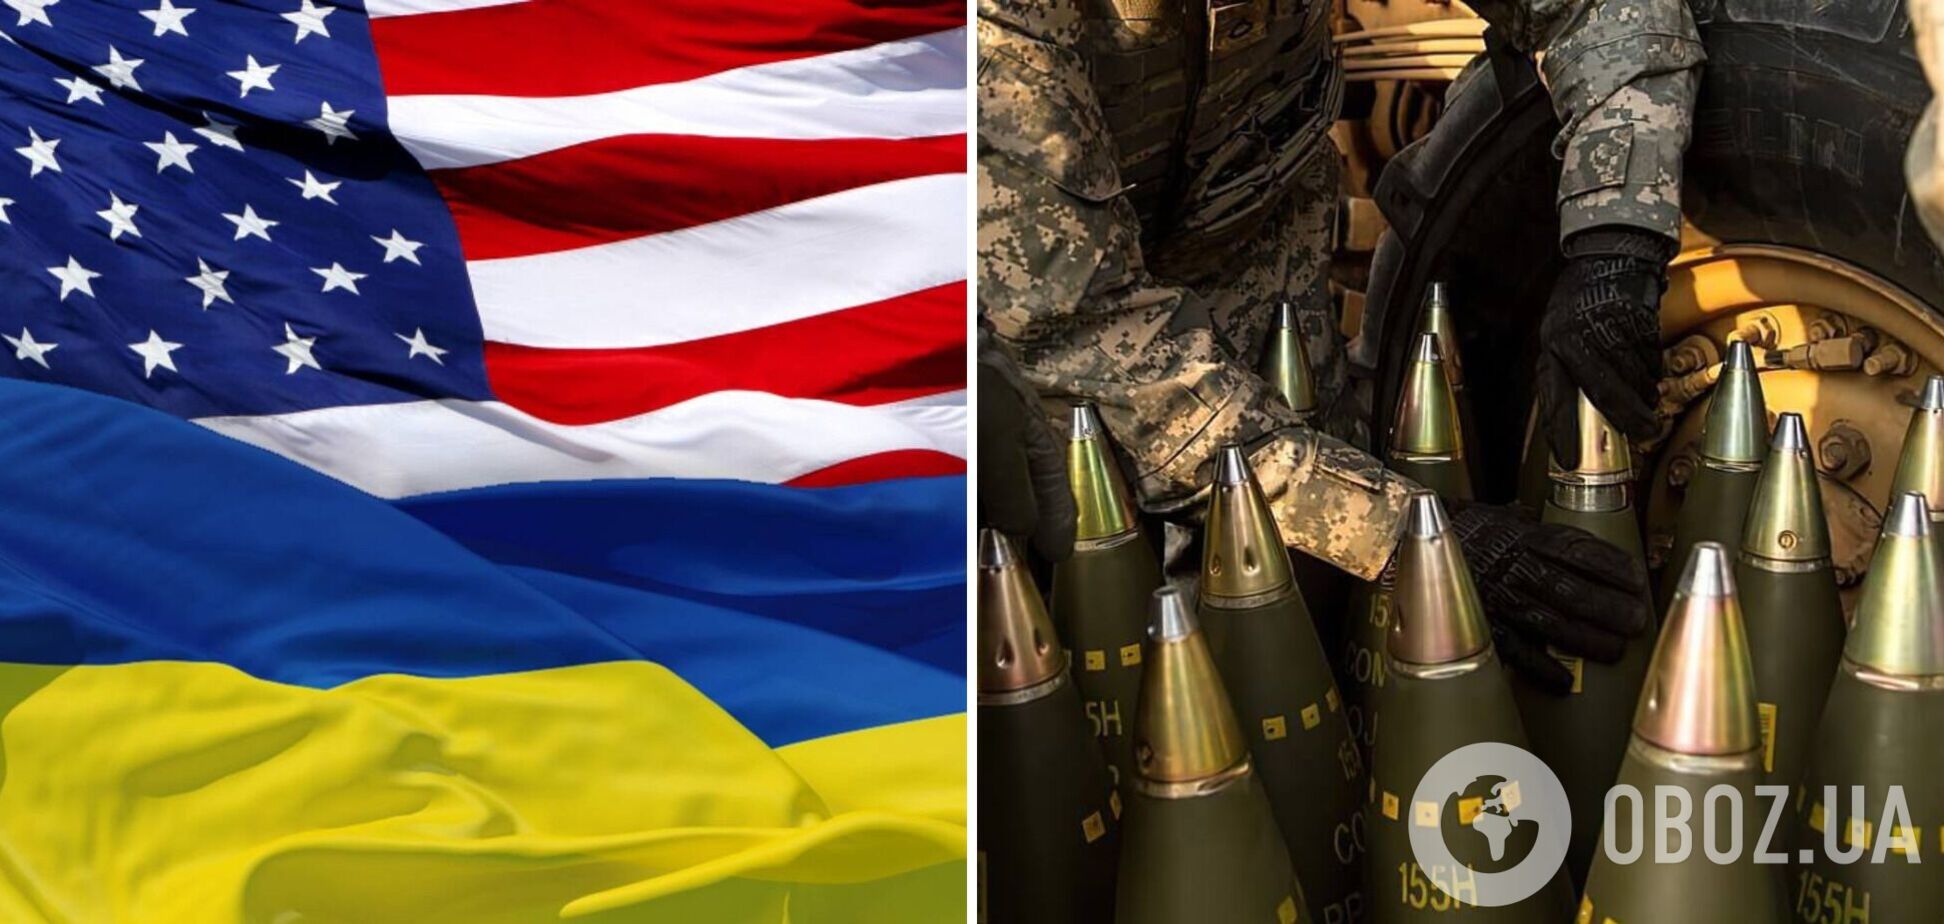 'Тільки не розраховуйте на американців': у Forbes відкрито звинуватили США у зраді України